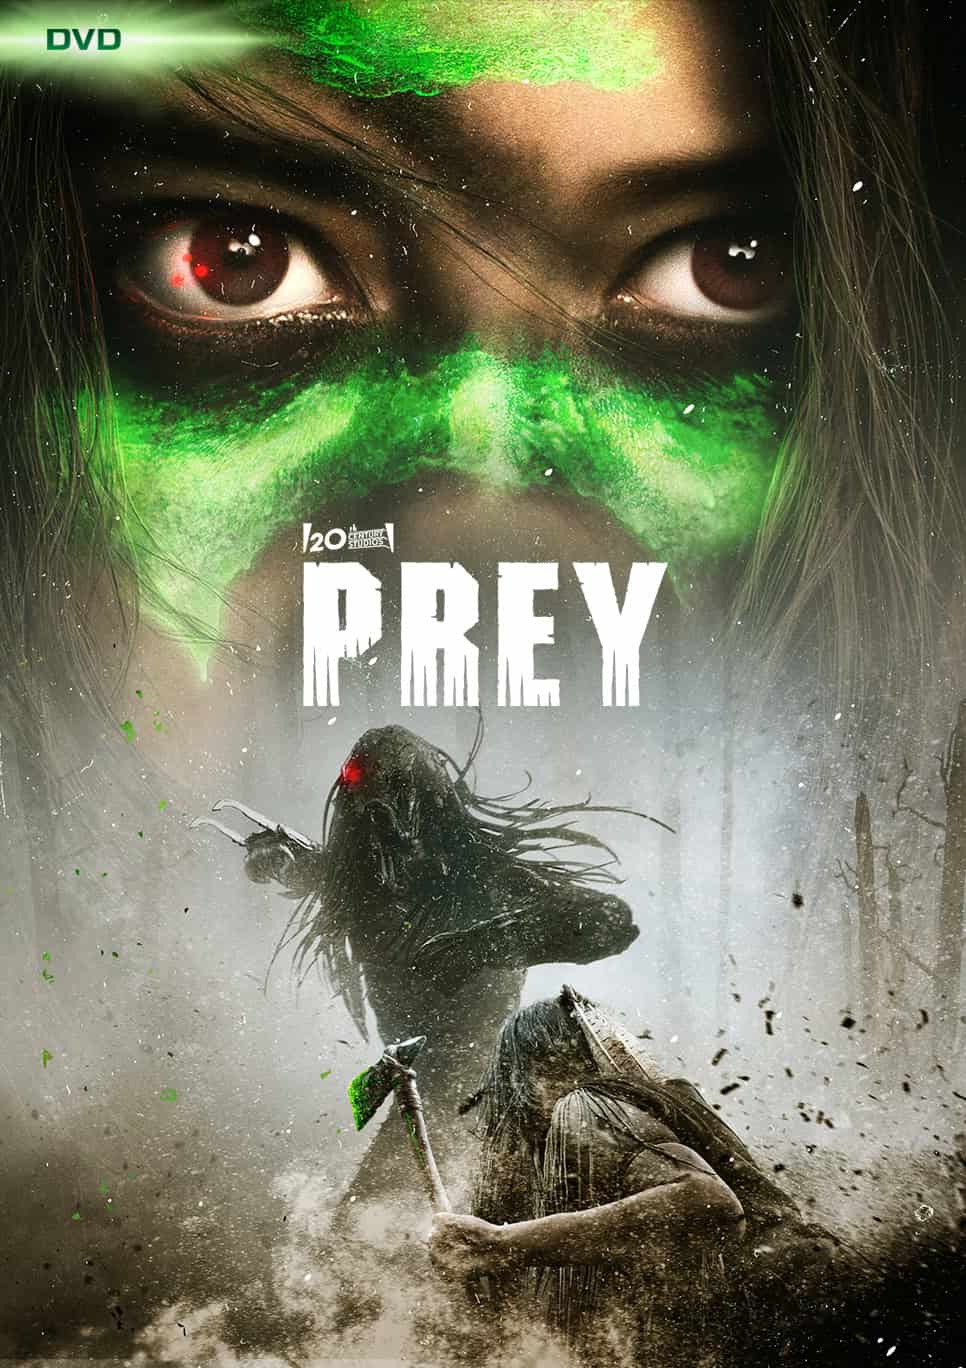 Prey Movie